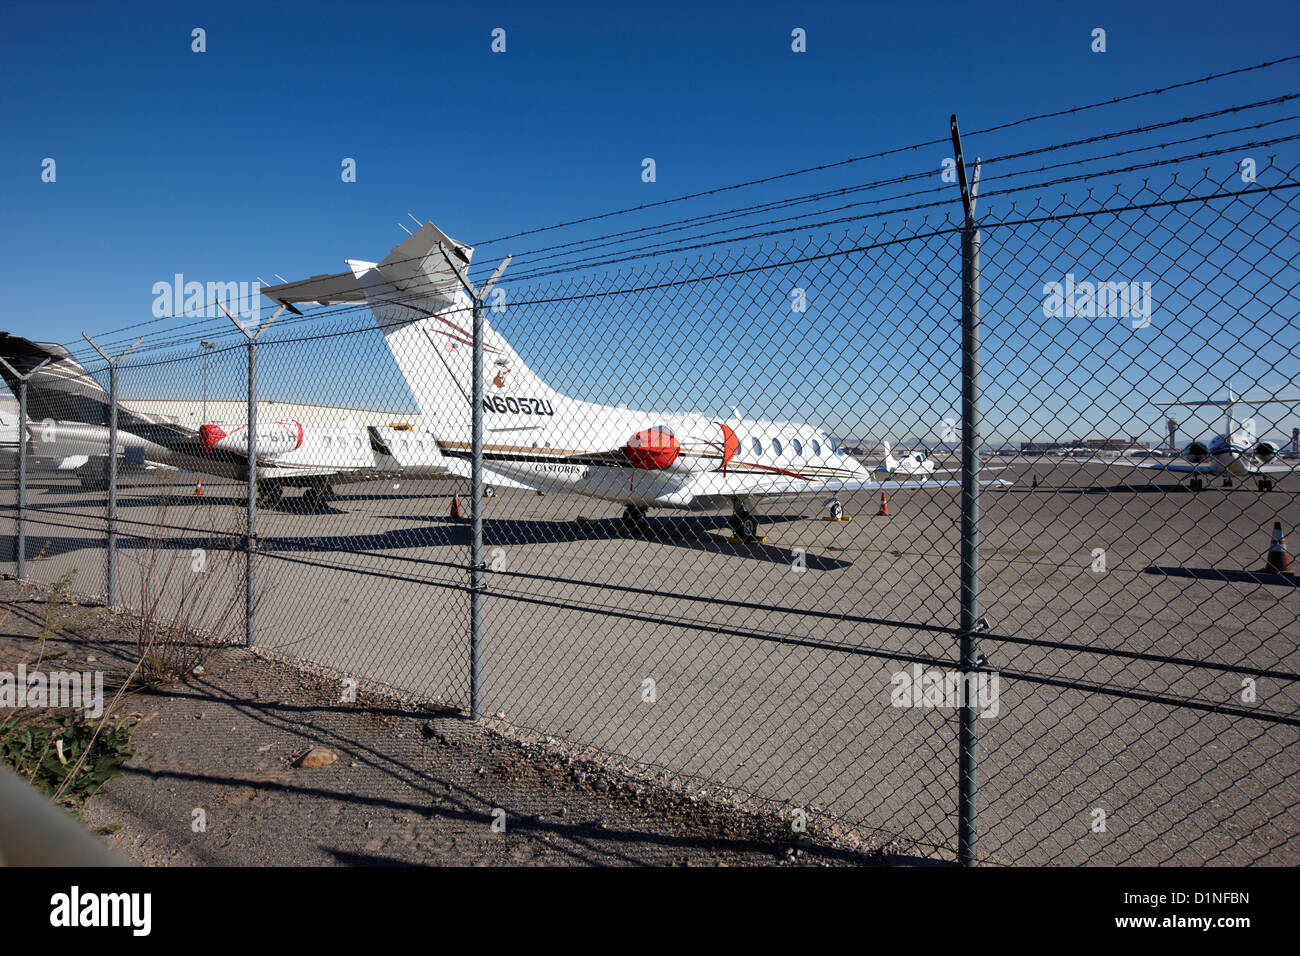 Sicherheit Kettenglied Fechten mit Warnschild Sperrgebiet auf dem Umfang  der Mccarran Flughafen Las Vegas Nevada, USA Stockfotografie - Alamy